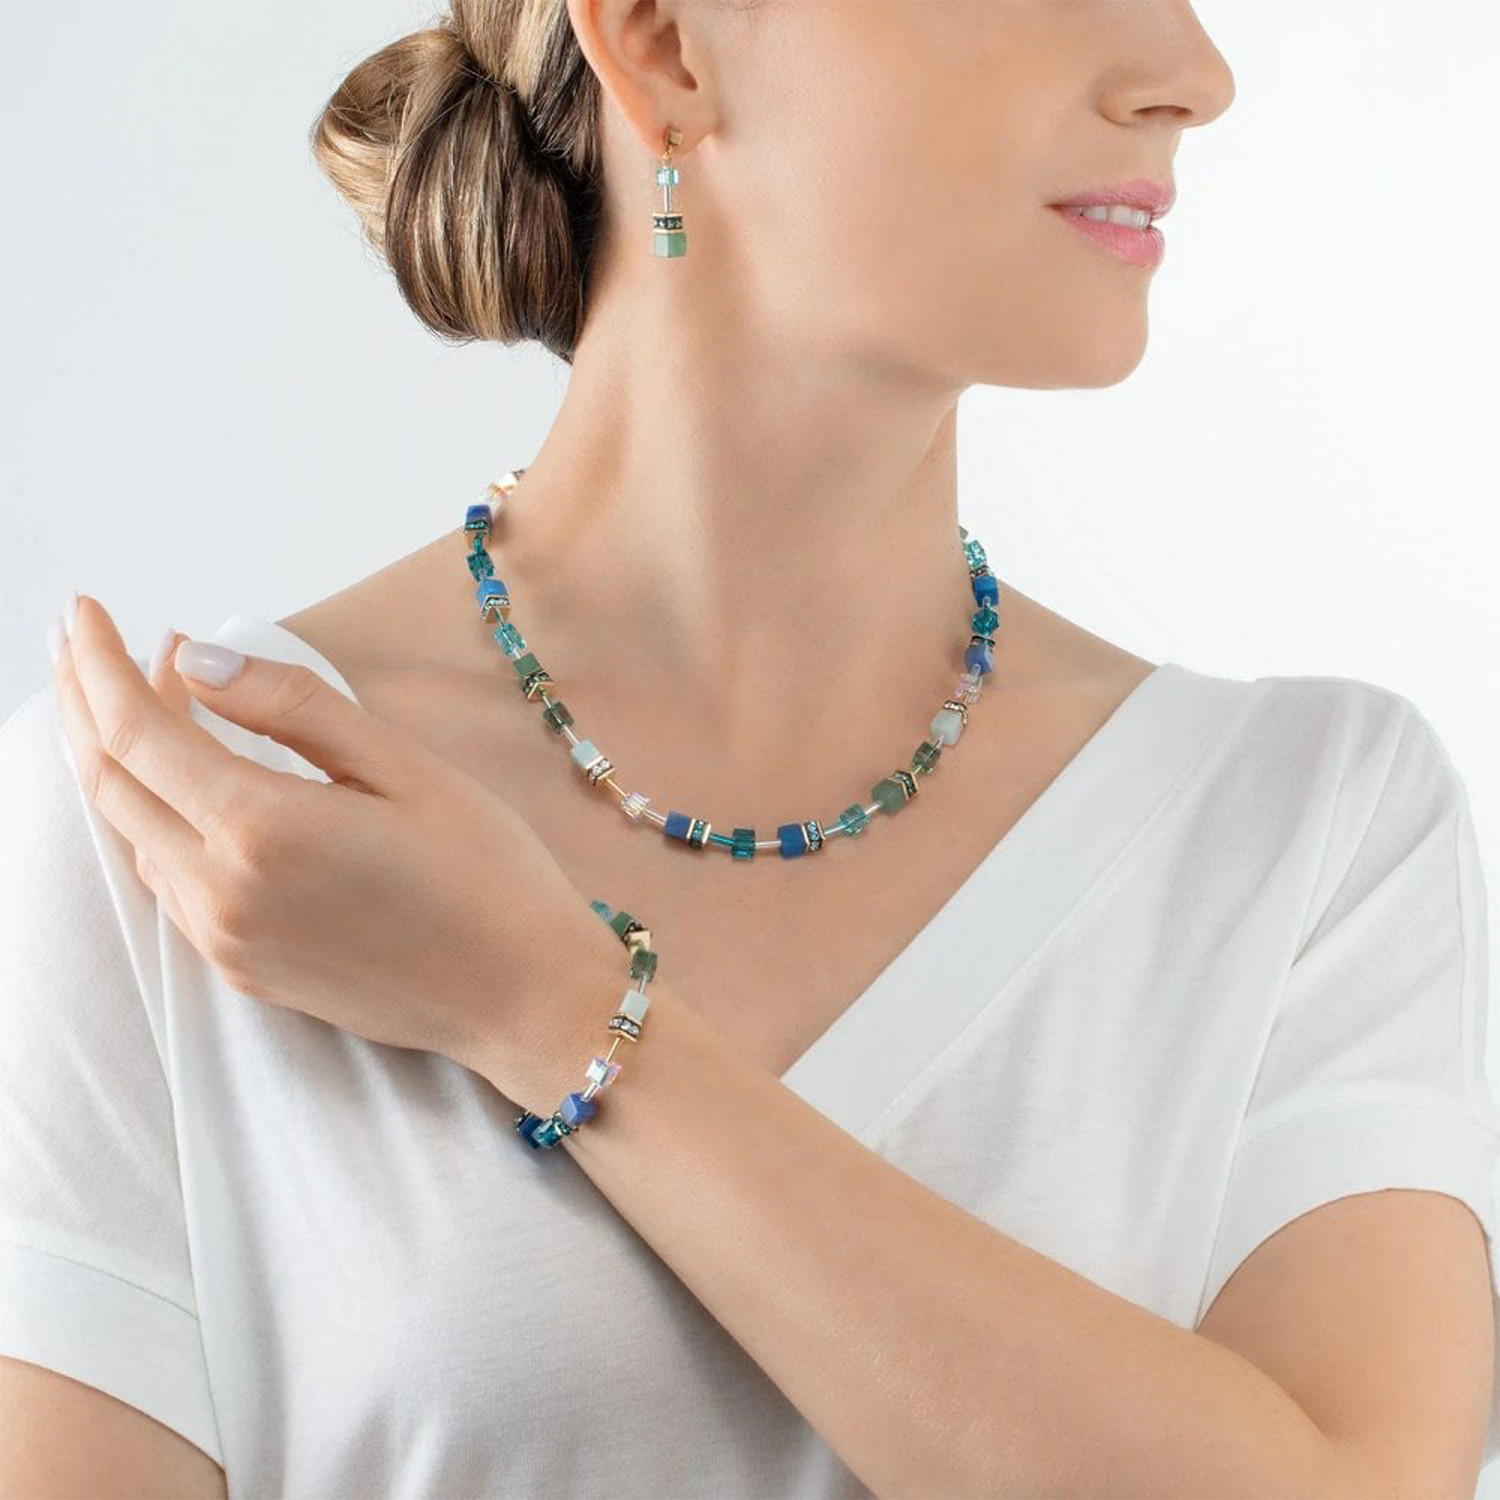 Bracelet Coeur de lion GeoCUBE® Iconic
Precious vert-turquoise